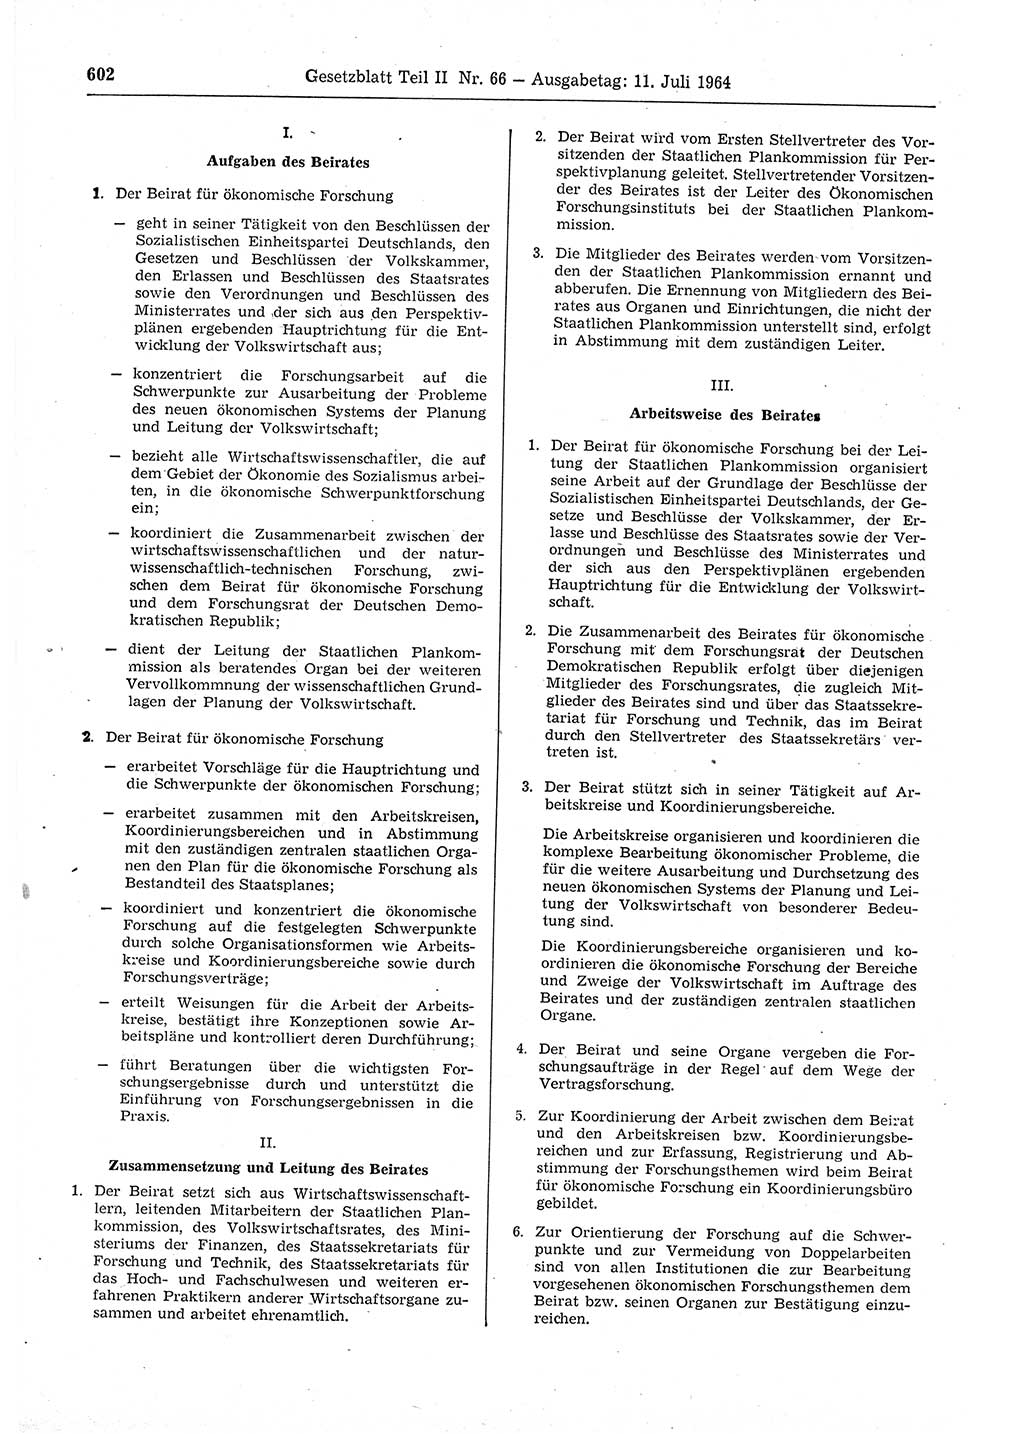 Gesetzblatt (GBl.) der Deutschen Demokratischen Republik (DDR) Teil ⅠⅠ 1964, Seite 602 (GBl. DDR ⅠⅠ 1964, S. 602)